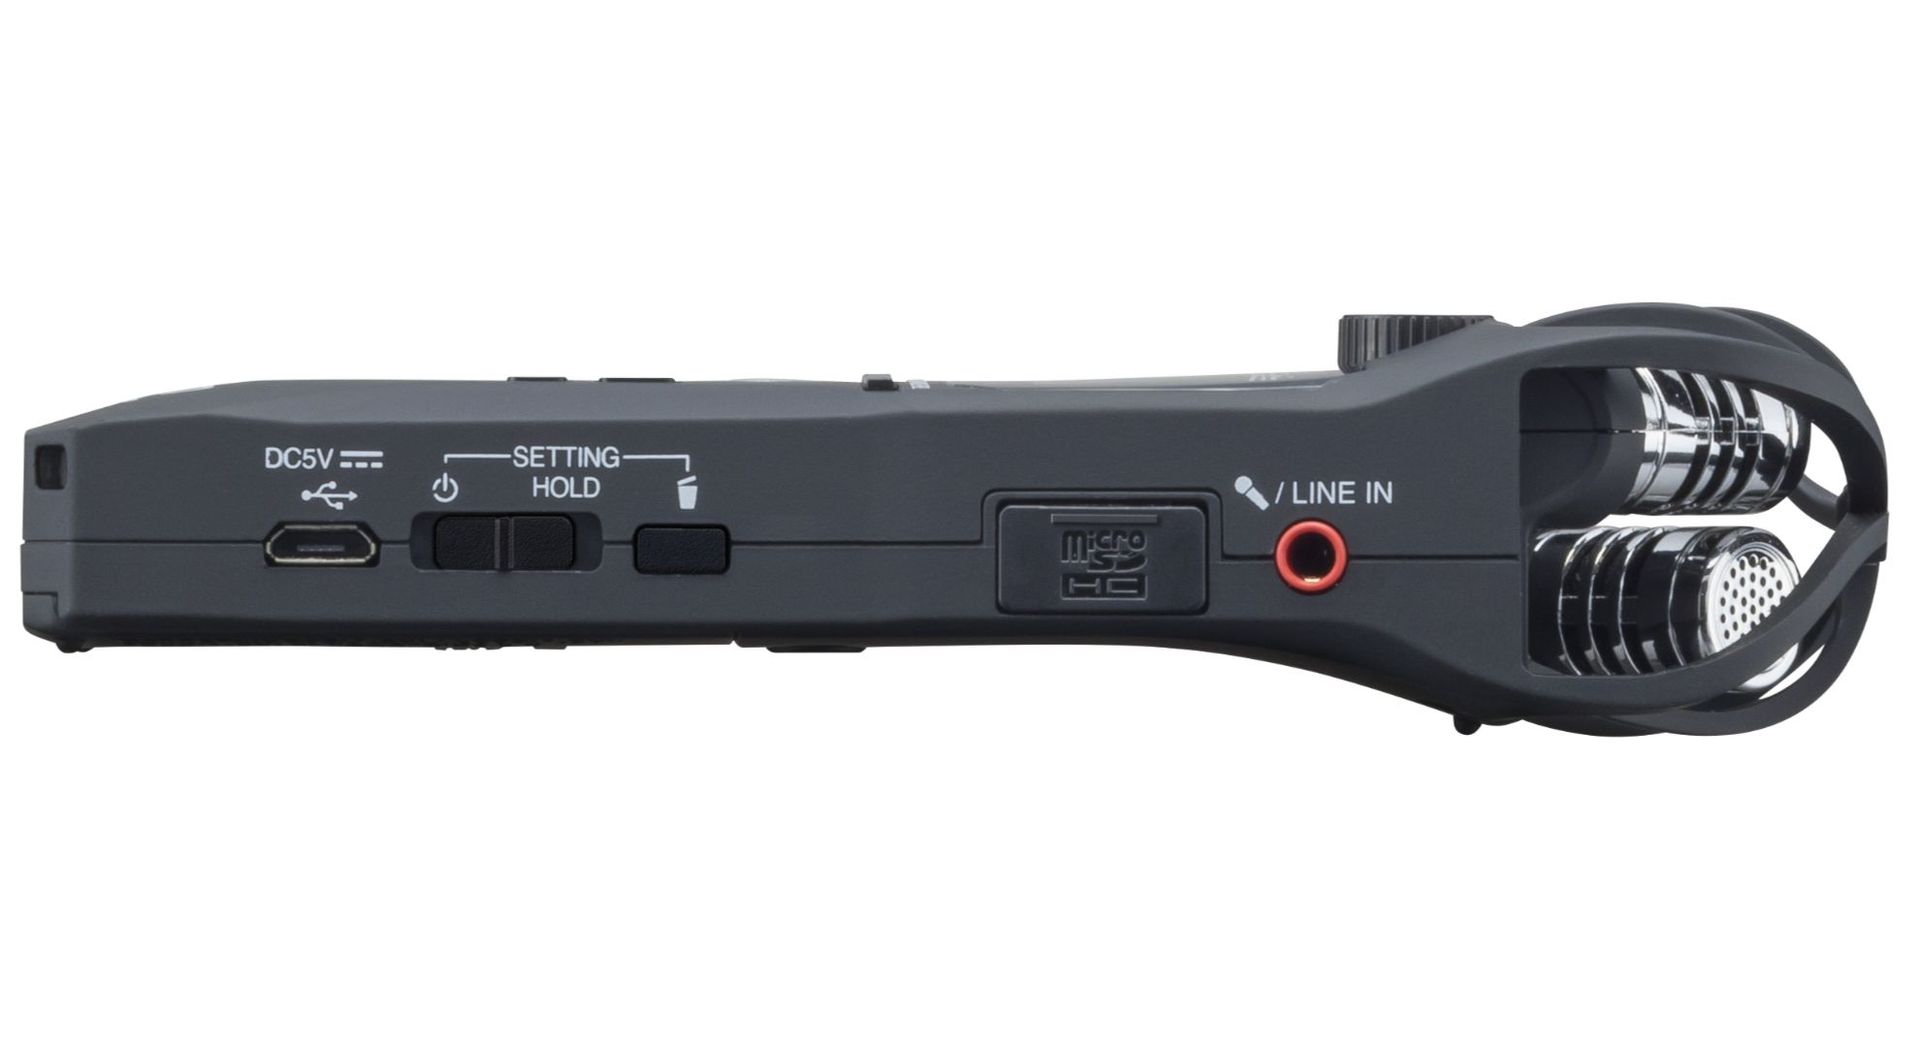 Zoom H1n tragbarer MP3/Wave Recorder Handyrecorder